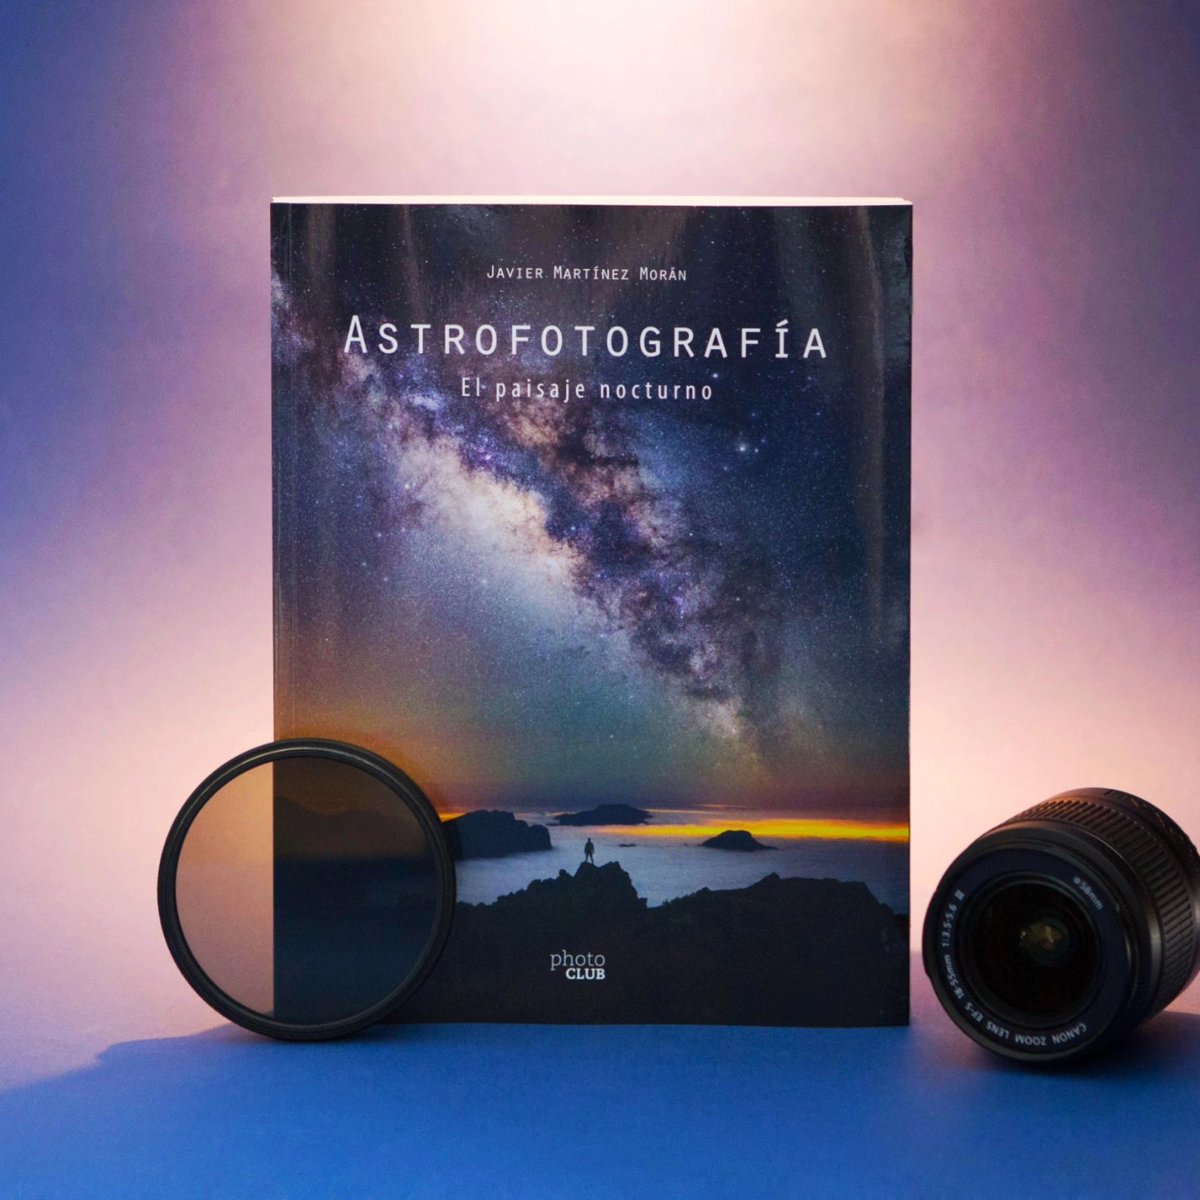 ¿Has probado a fotografiar las #estrellas alguna vez? 🔭✨

Si quieres adentrarte en el apasionante mundo de la #astrofotografía te recomendamos esta increíble guía que @jmartinezmoran editó con @PhotoClub_es en 2020.

📖👉 bit.ly/3ea2N3G